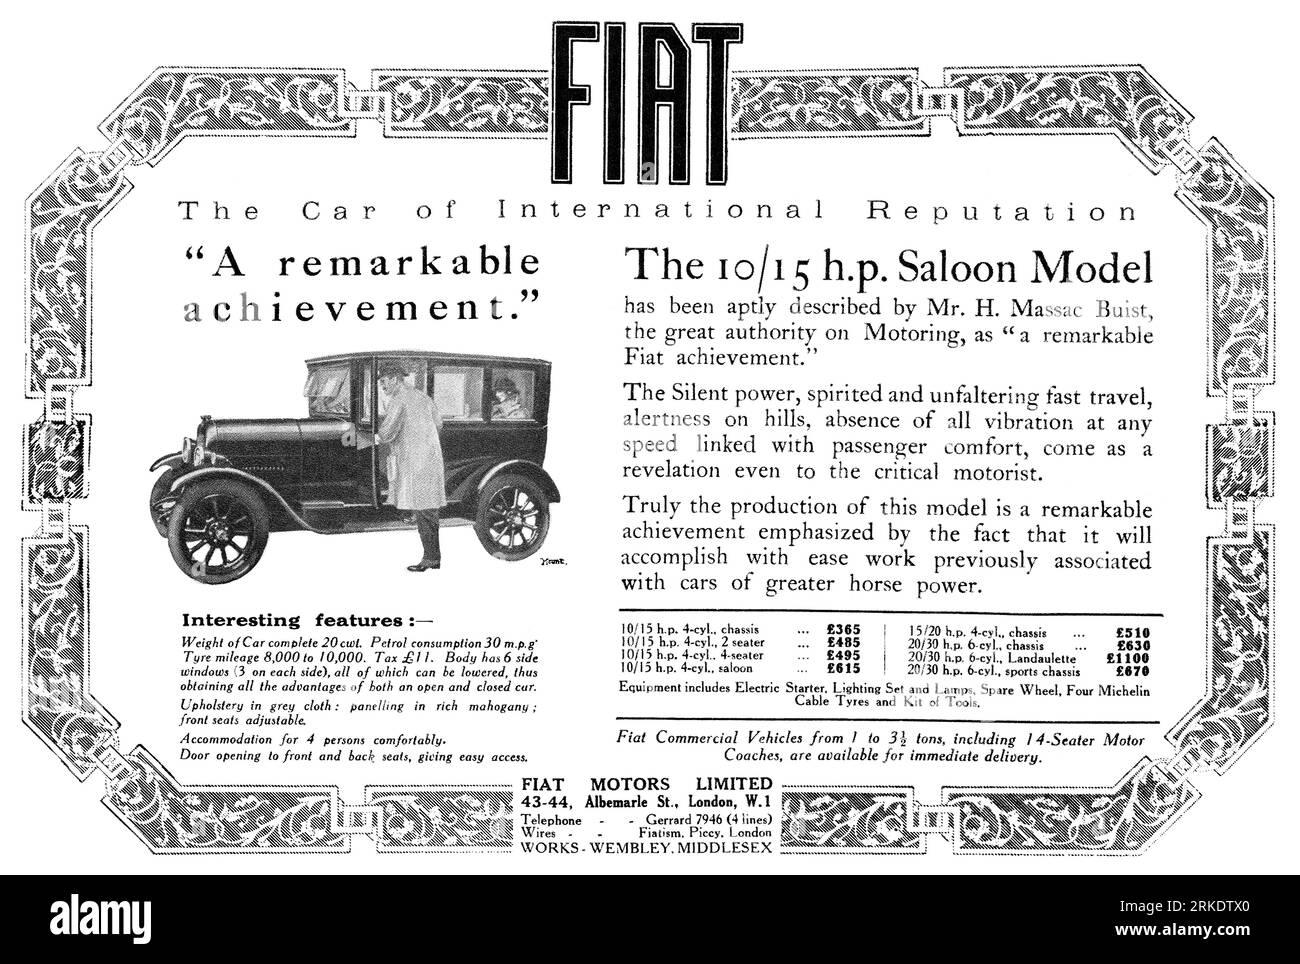 1923 pubblicità britannica per il modello di berlina Fiat 10/15h.p. a motore. Foto Stock